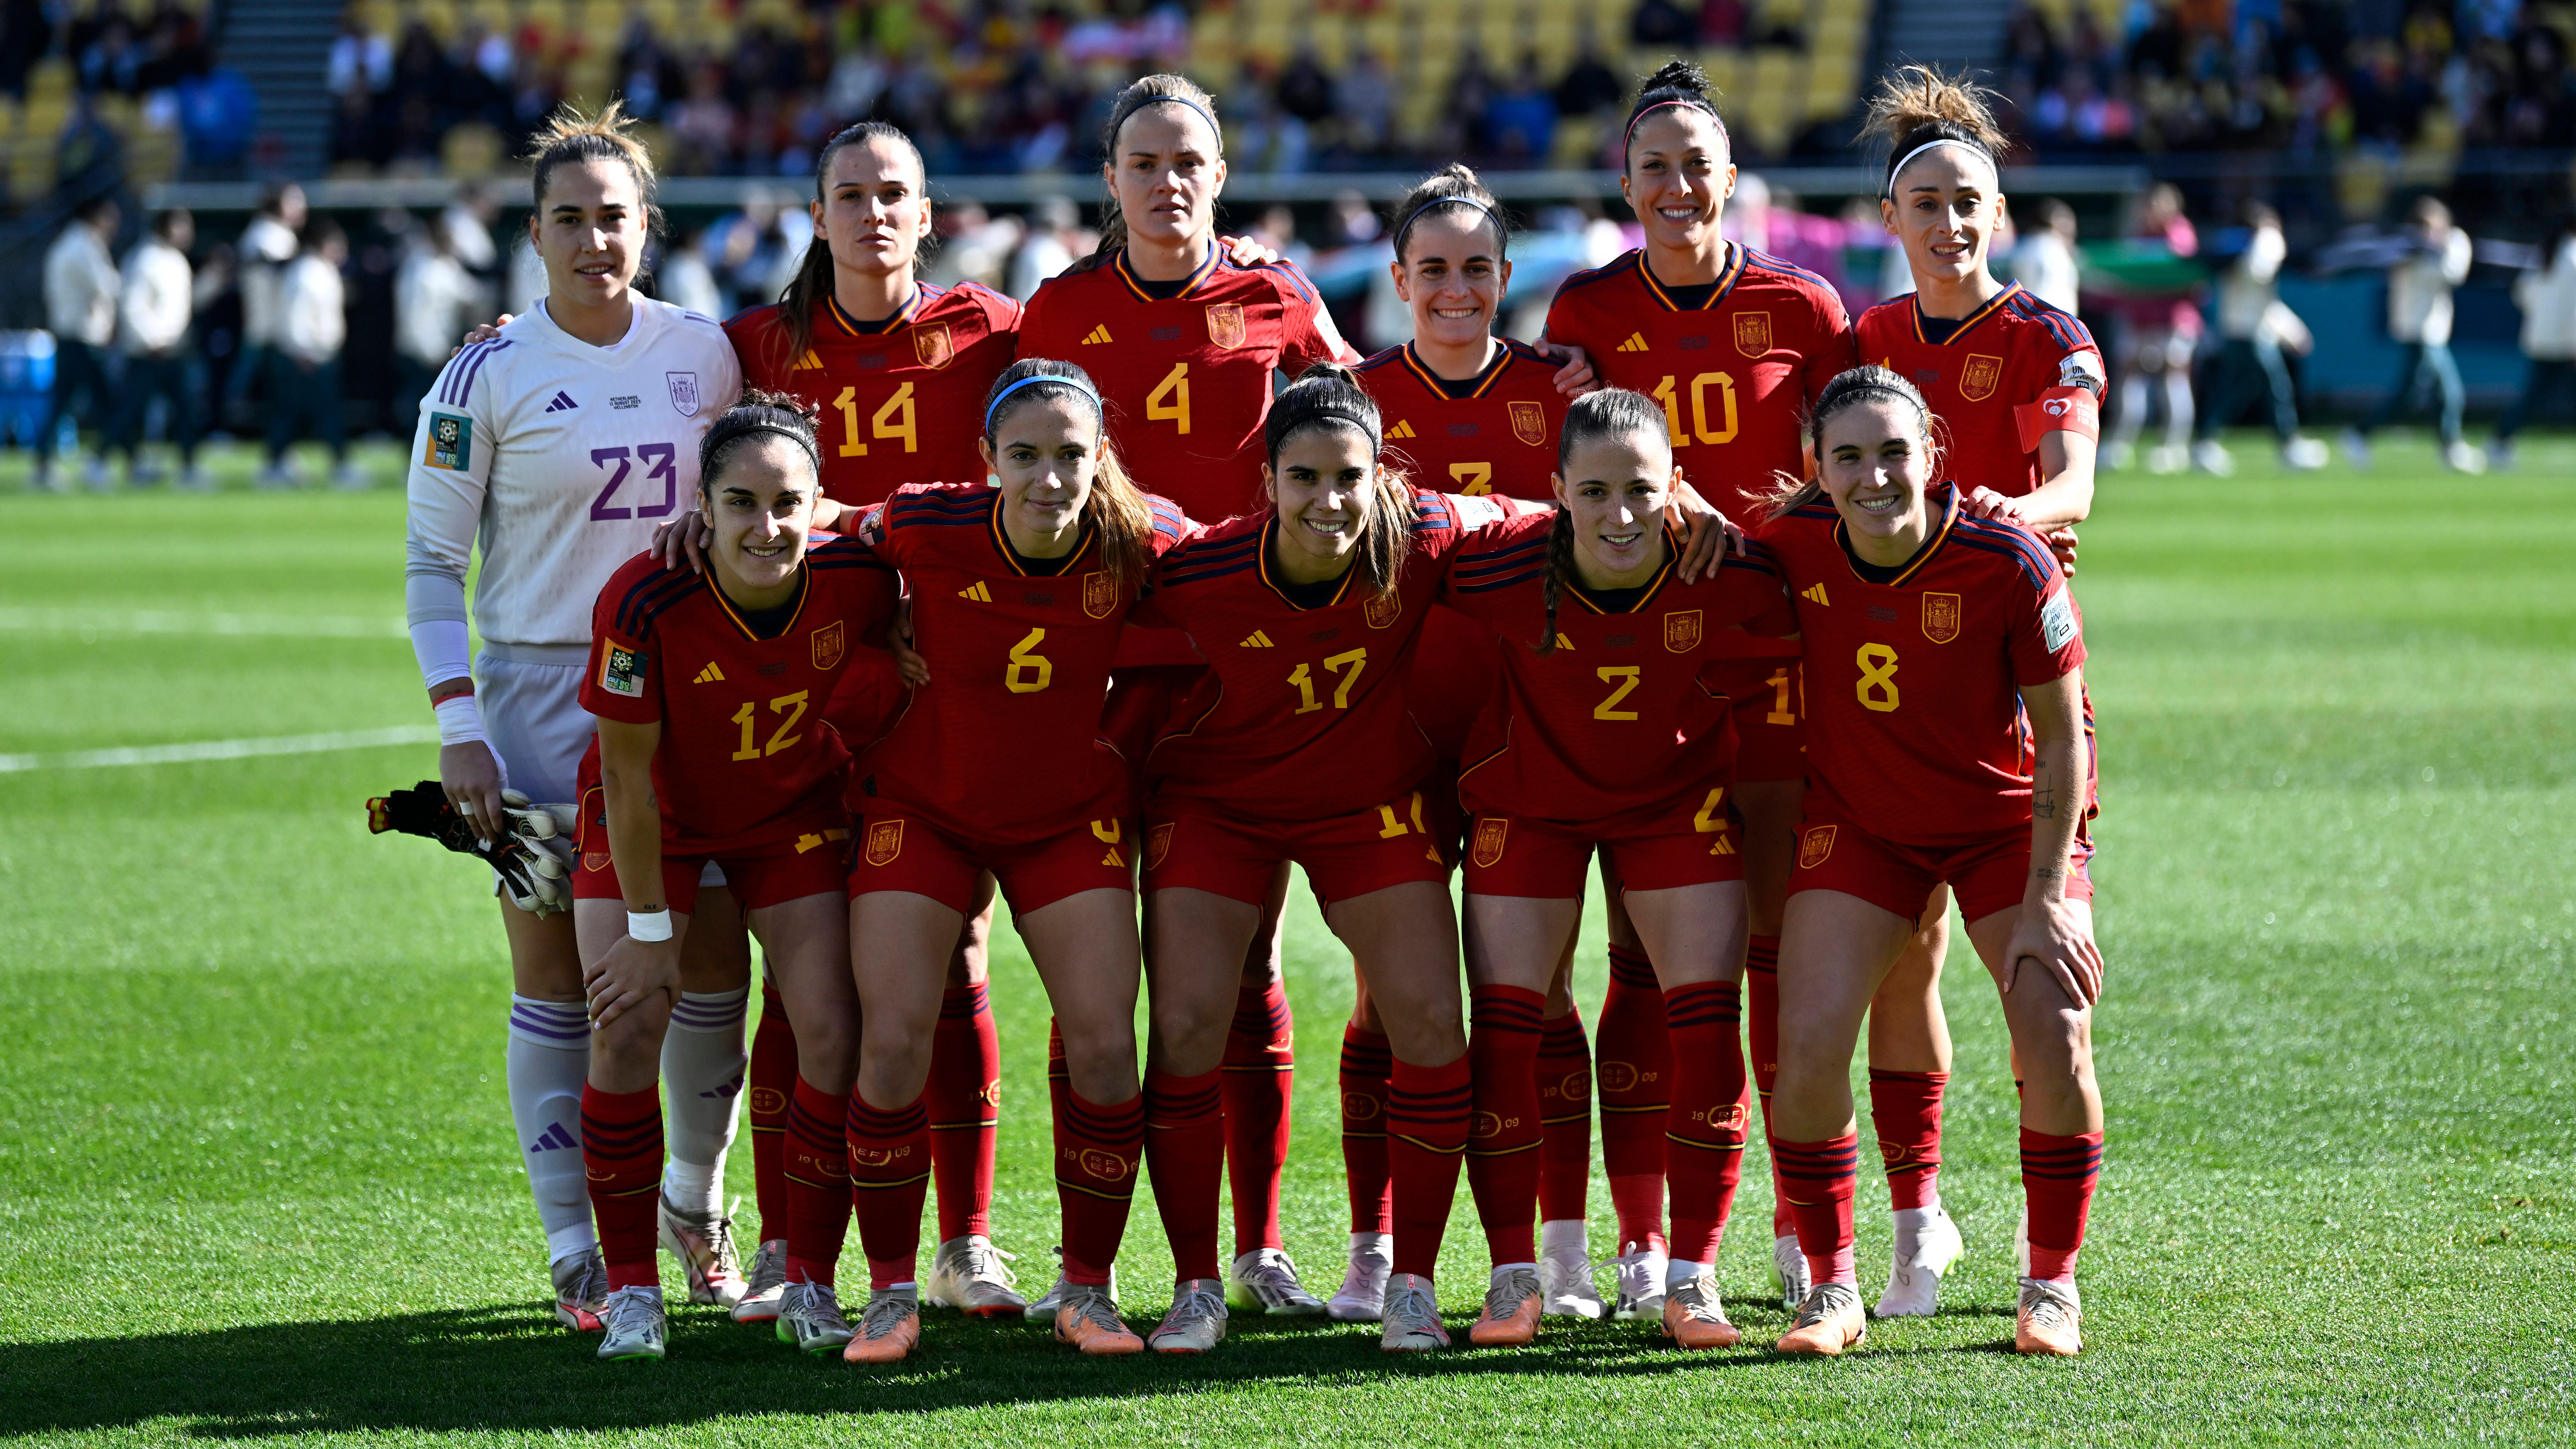 WM-Halbfinale Spanien gegen Schweden heute live im TV und Stream sehen